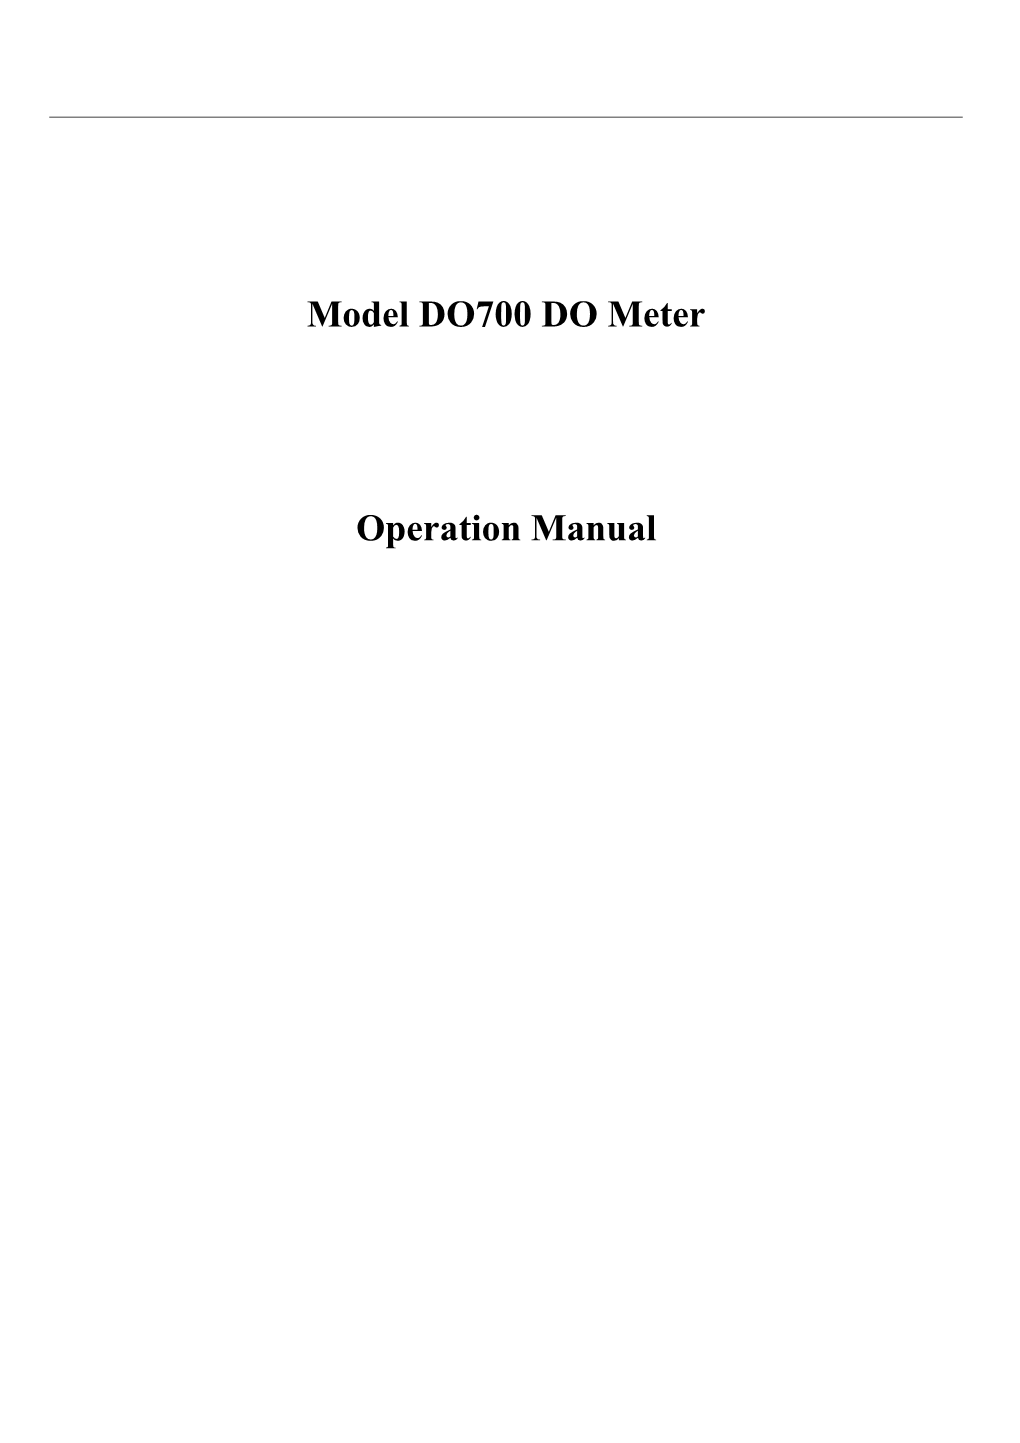 Model DO700 DO Meter